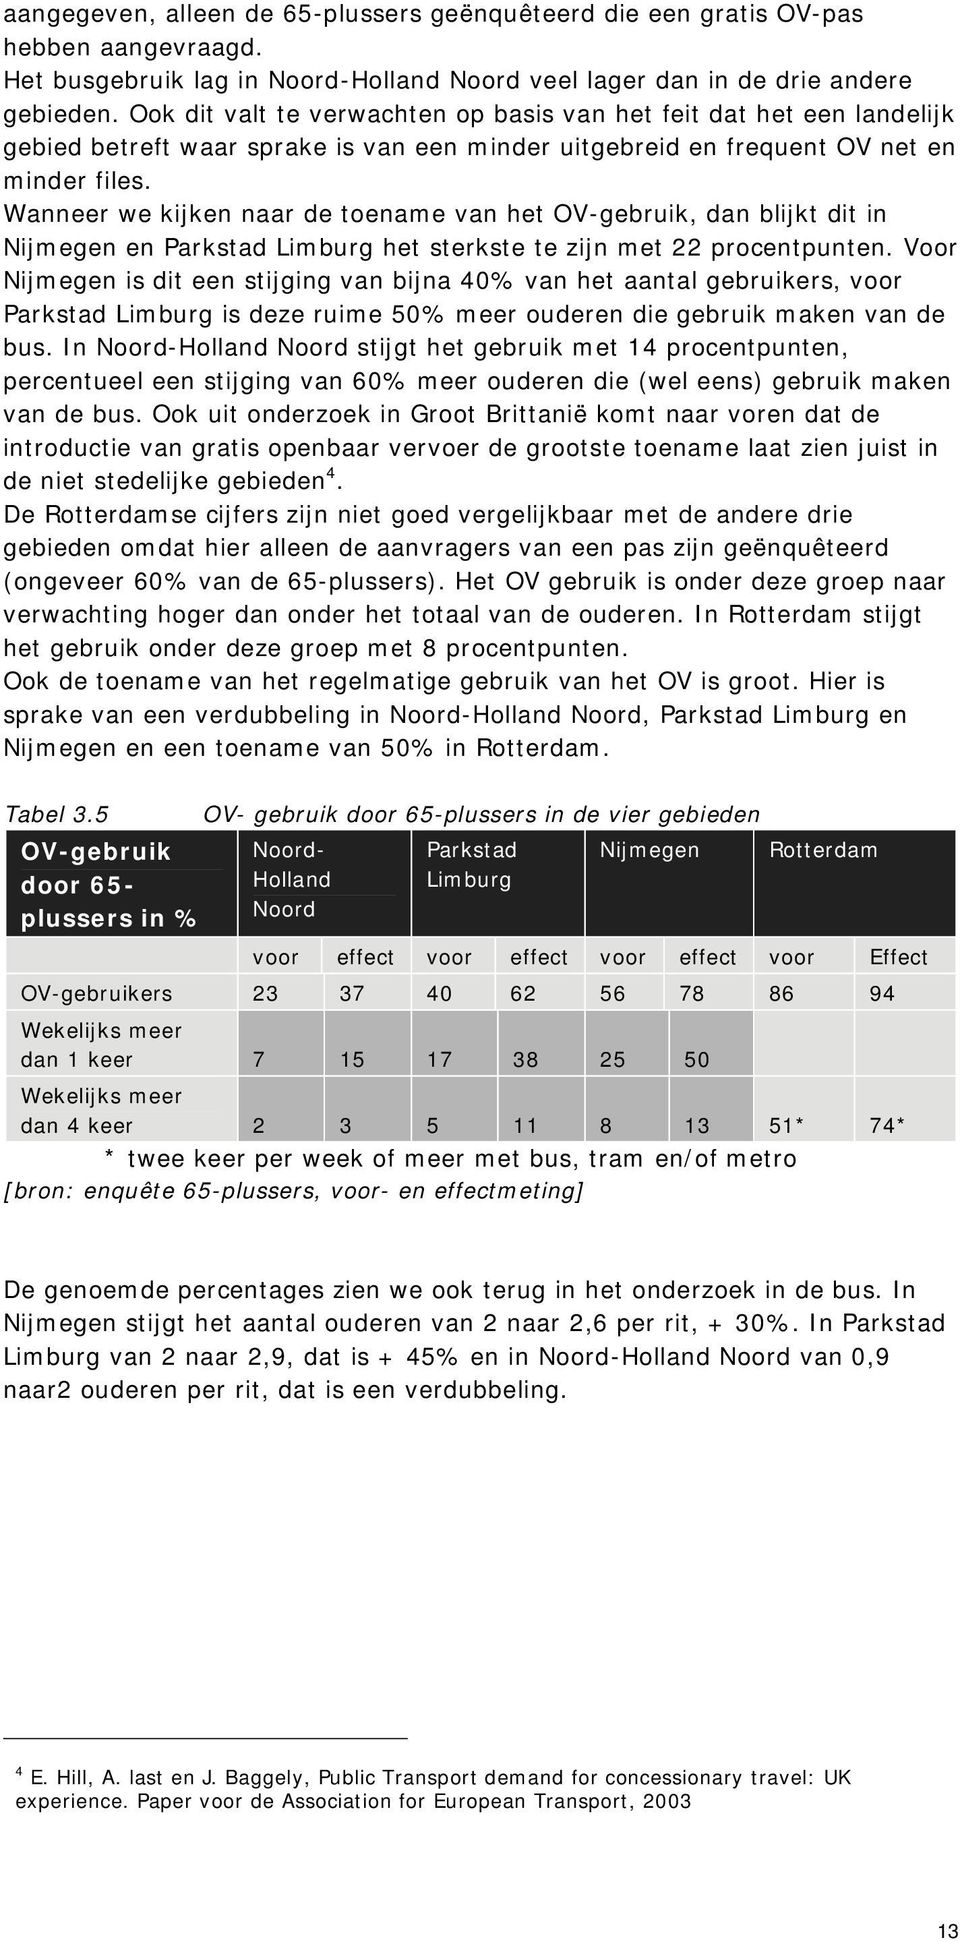 Wanneer we kijken naar de toename van het OV-gebruik, dan blijkt dit in Nijmegen en Parkstad Limburg het sterkste te zijn met 22 procentpunten.